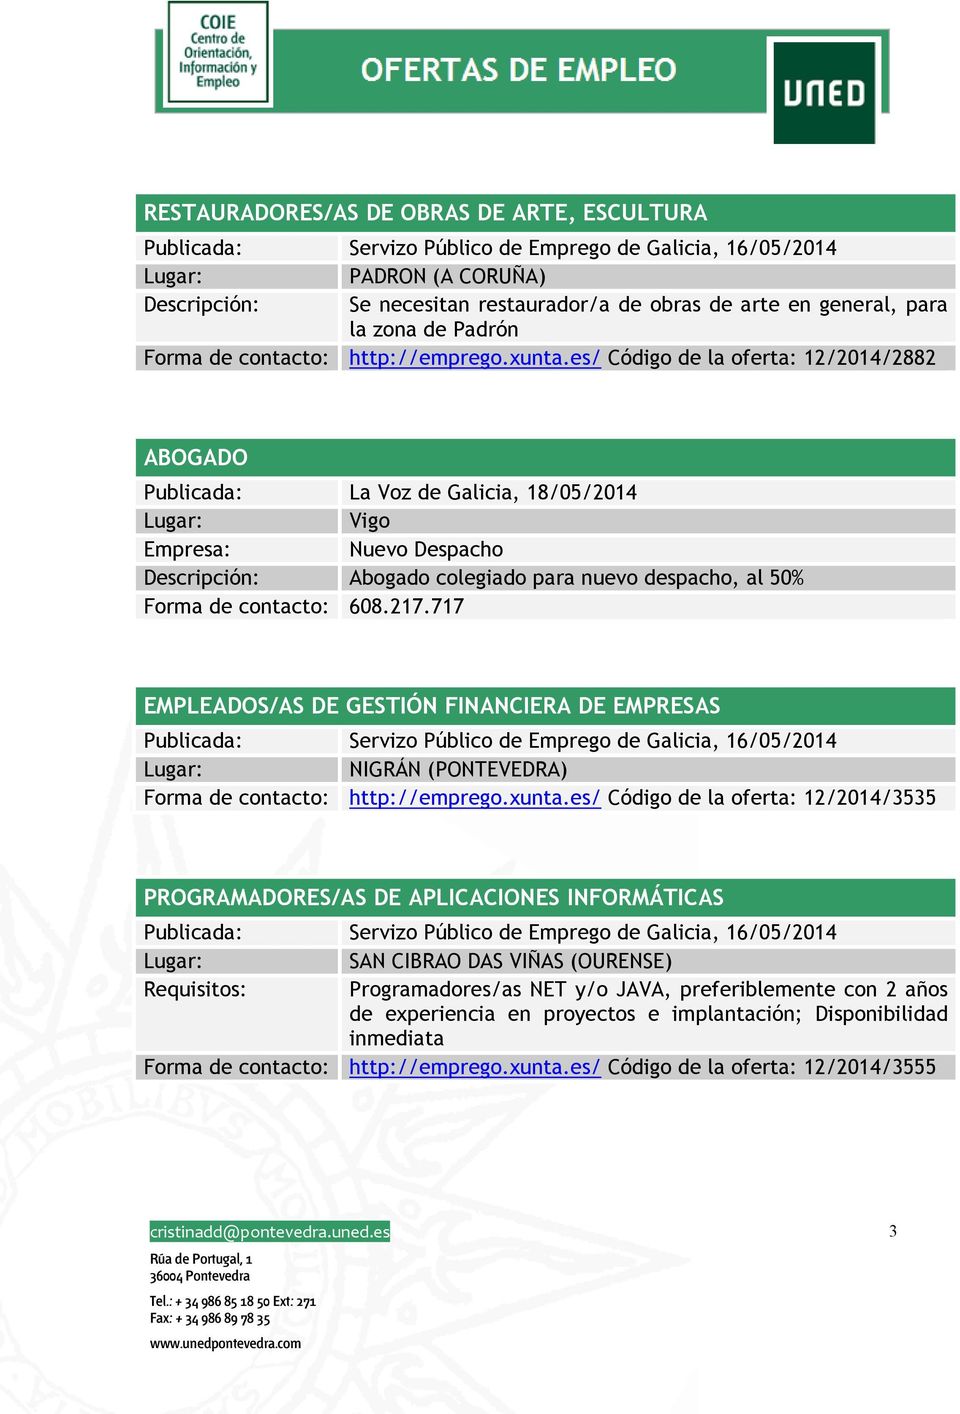 es/ Código de la oferta: 12/2014/2882 ABOGADO Publicada: La Voz de Galicia, 18/05/2014 Vigo Empresa: Nuevo Despacho Descripción: Abogado colegiado para nuevo despacho, al 50% Forma de contacto: 608.